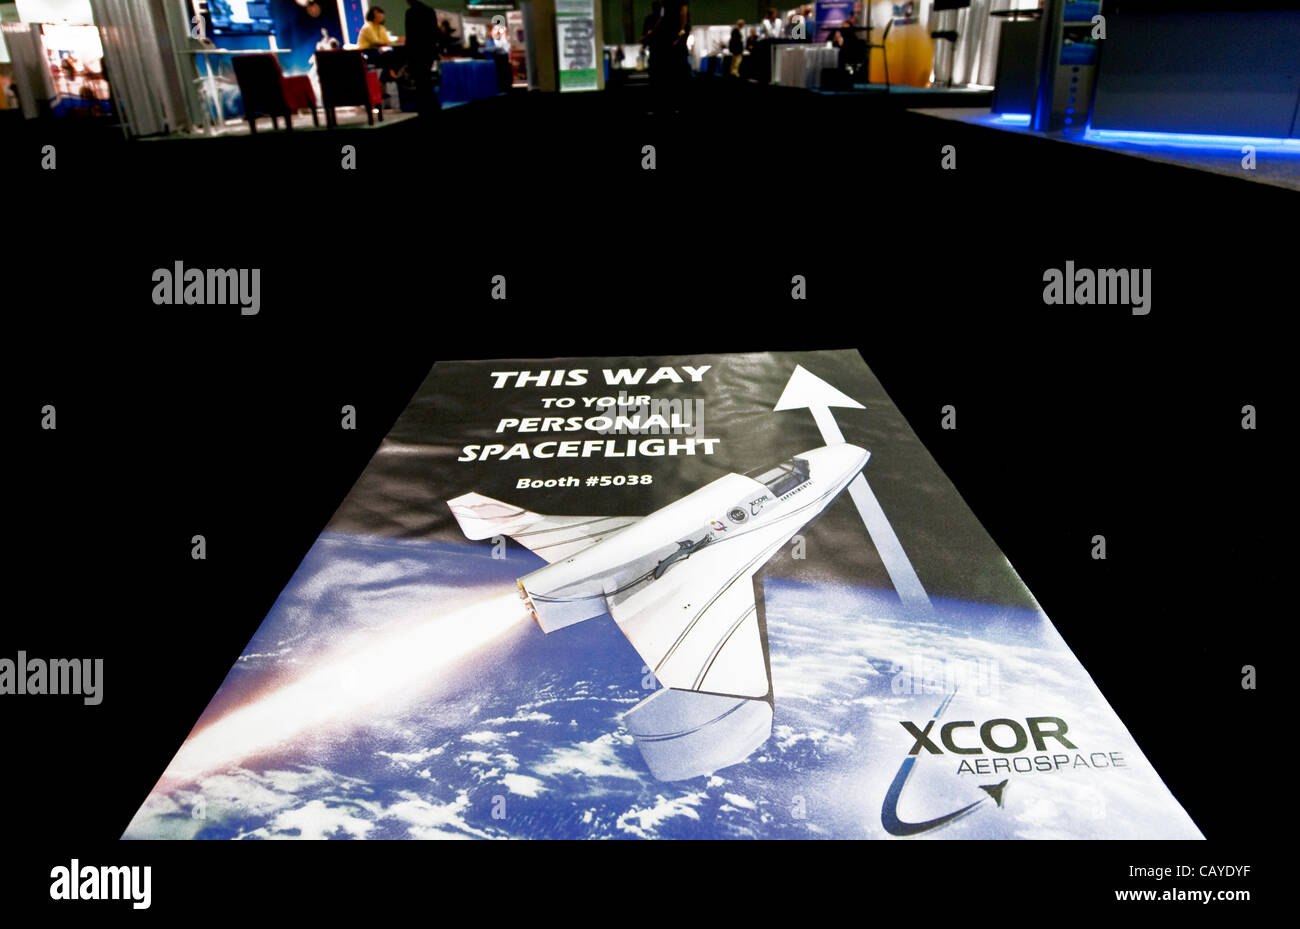 8. Mai 2012 - Los Angeles, Kalifornien, USA - Stock Beschilderung von XCOR Aerospace, Entwickler von wiederverwendbaren, raketengetriebenen Fahrzeugen, weist den Weg in Richtung der Ausstellungshalle und darüber hinaus während der Spacecraft Technology Expo auf dem Los Angeles Convention Center statt. Die erste Ausstellung ihrer Art, die Stockfoto